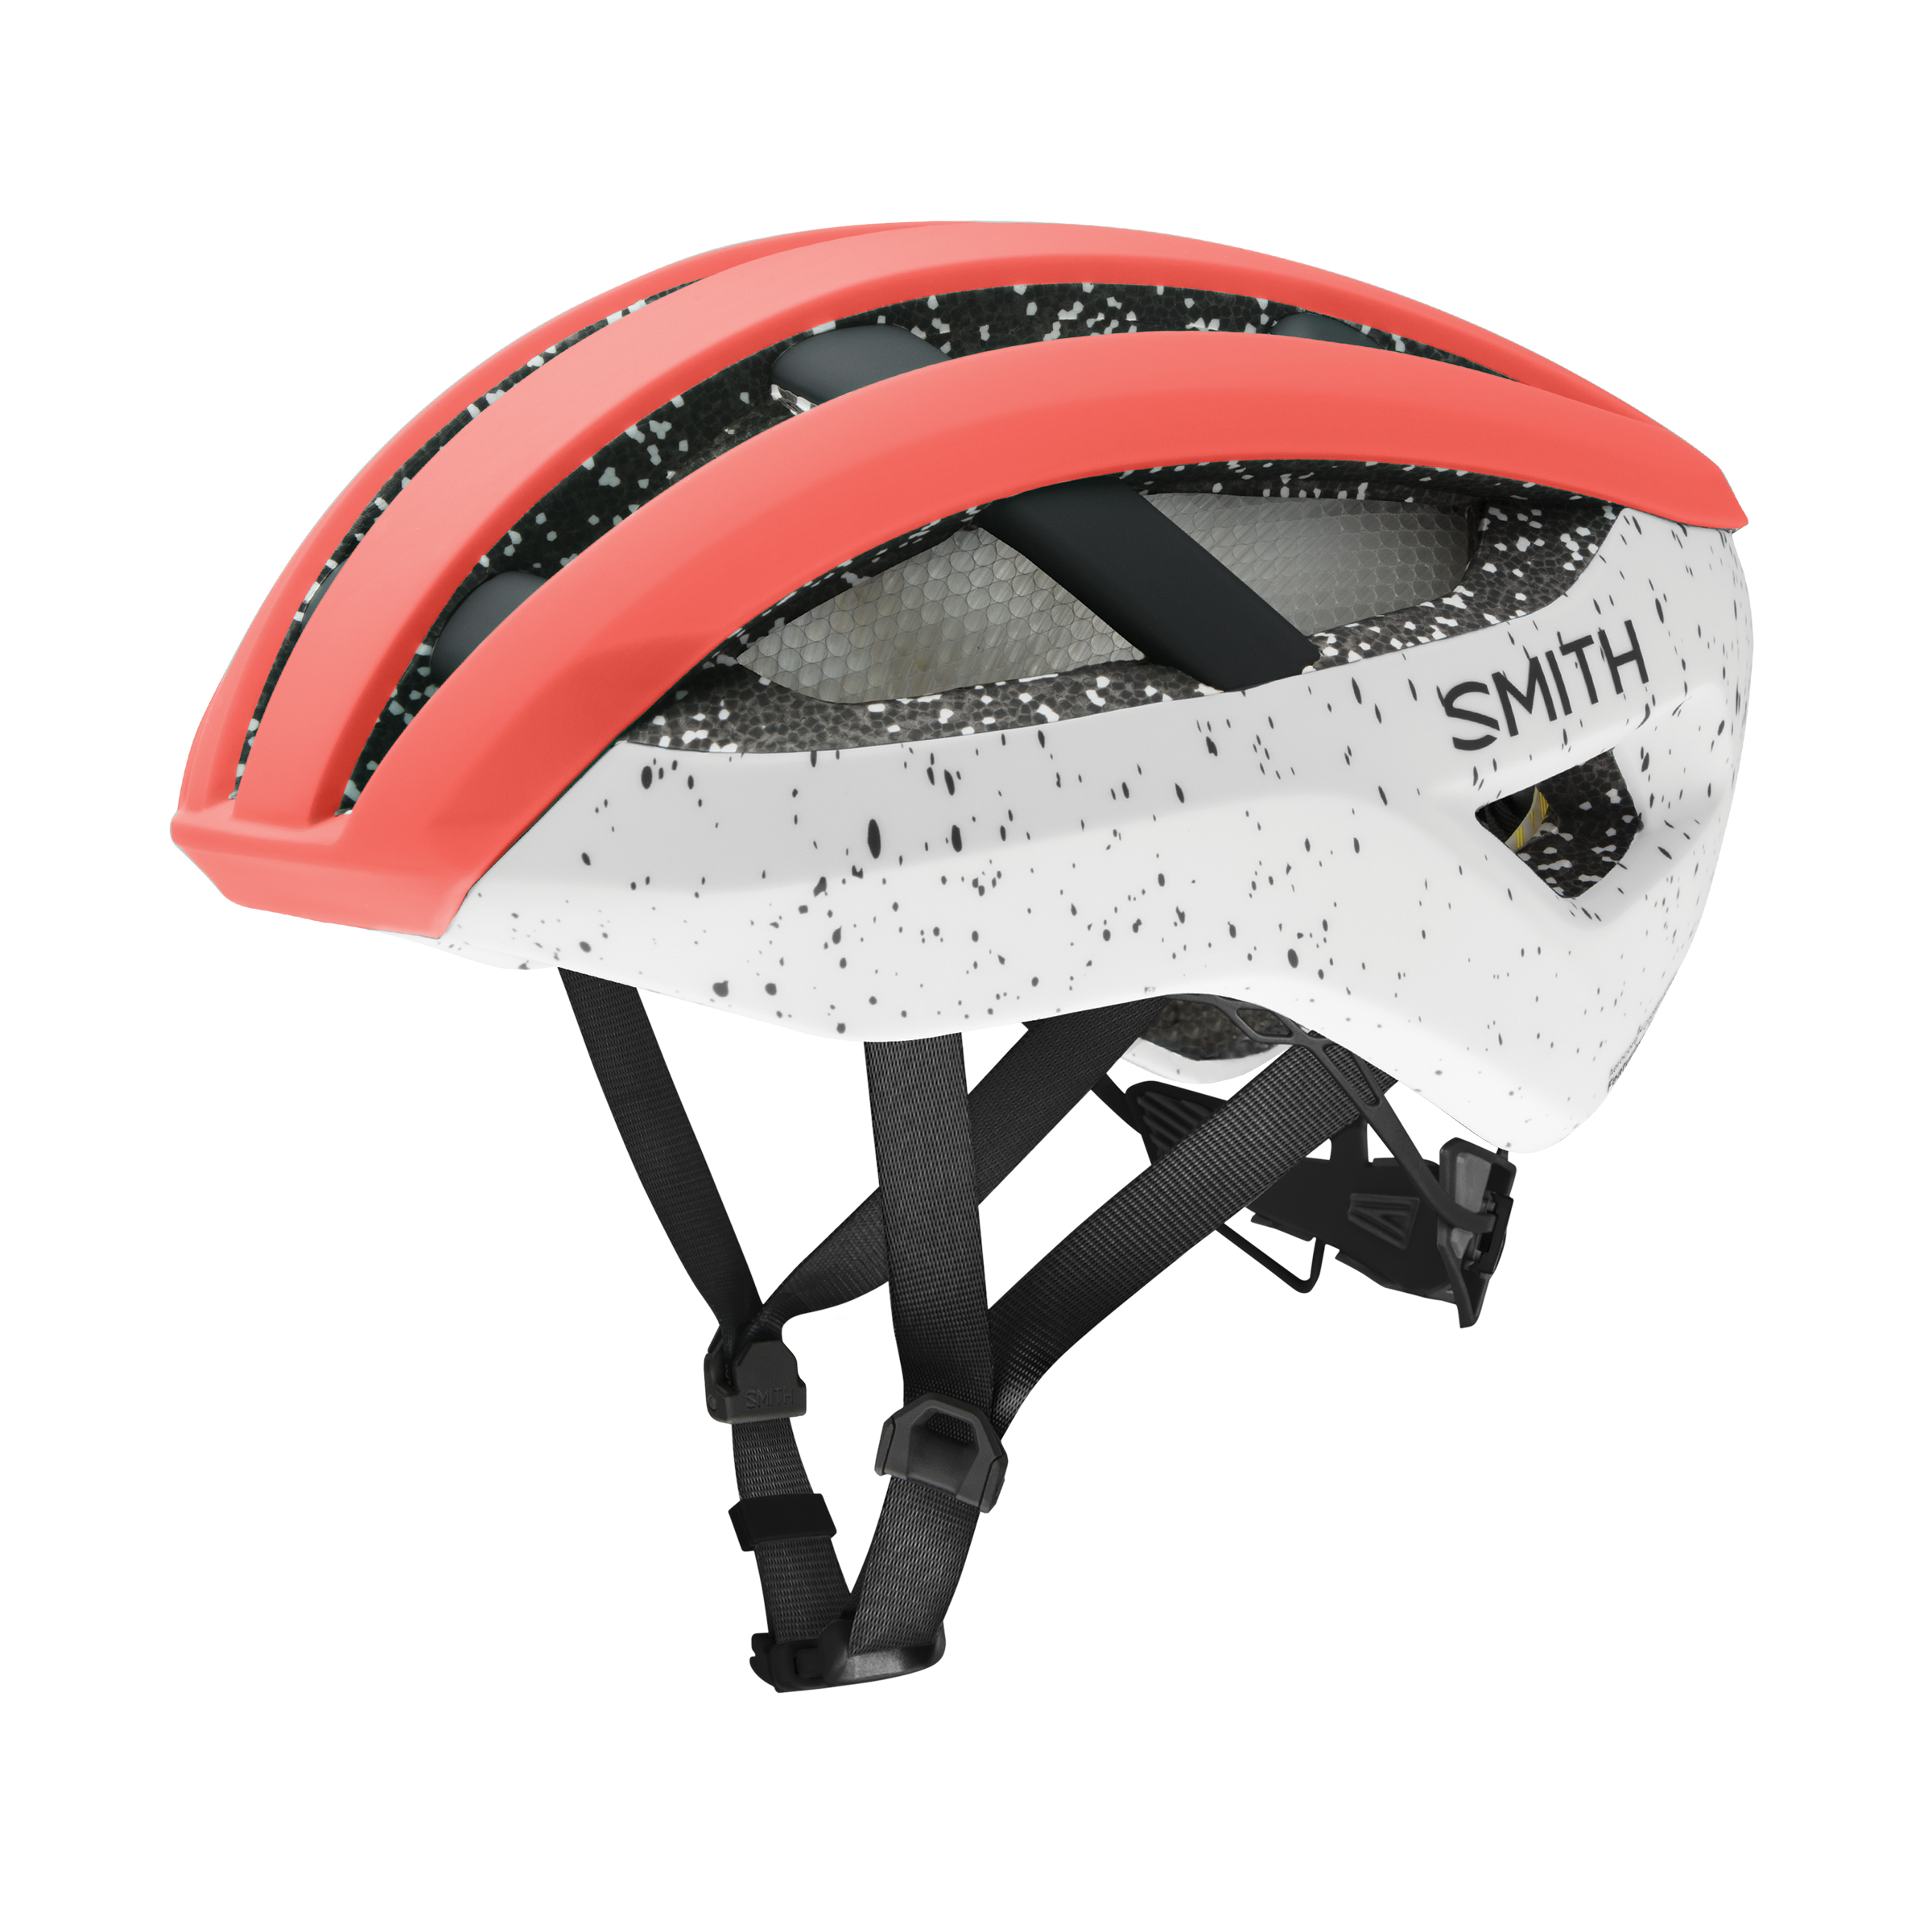 smith optics network helmet